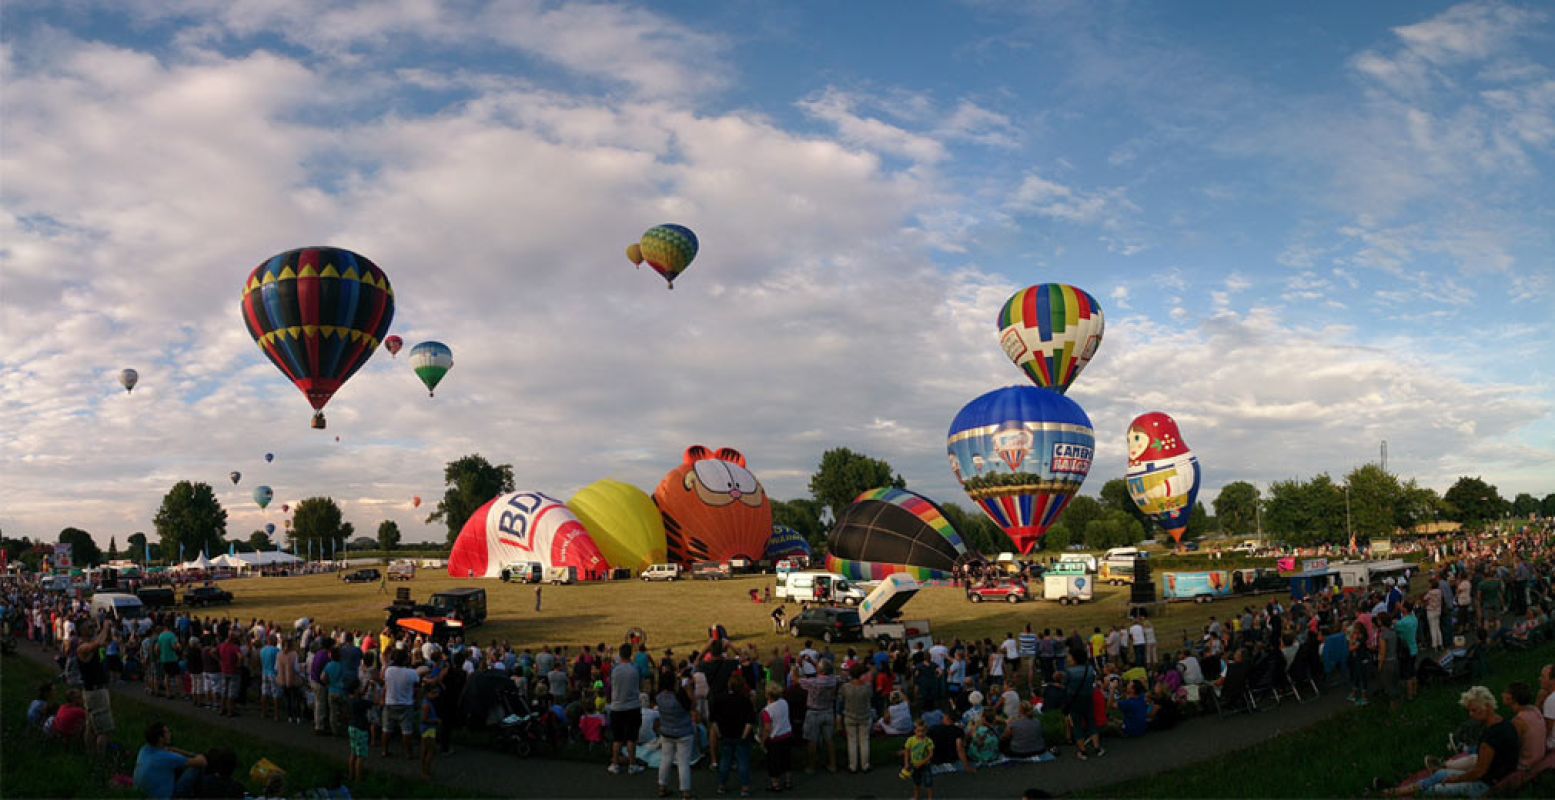 De luchtballonnen van Ballonfestival Grave kunnen rekenen op veel toeschouwers.